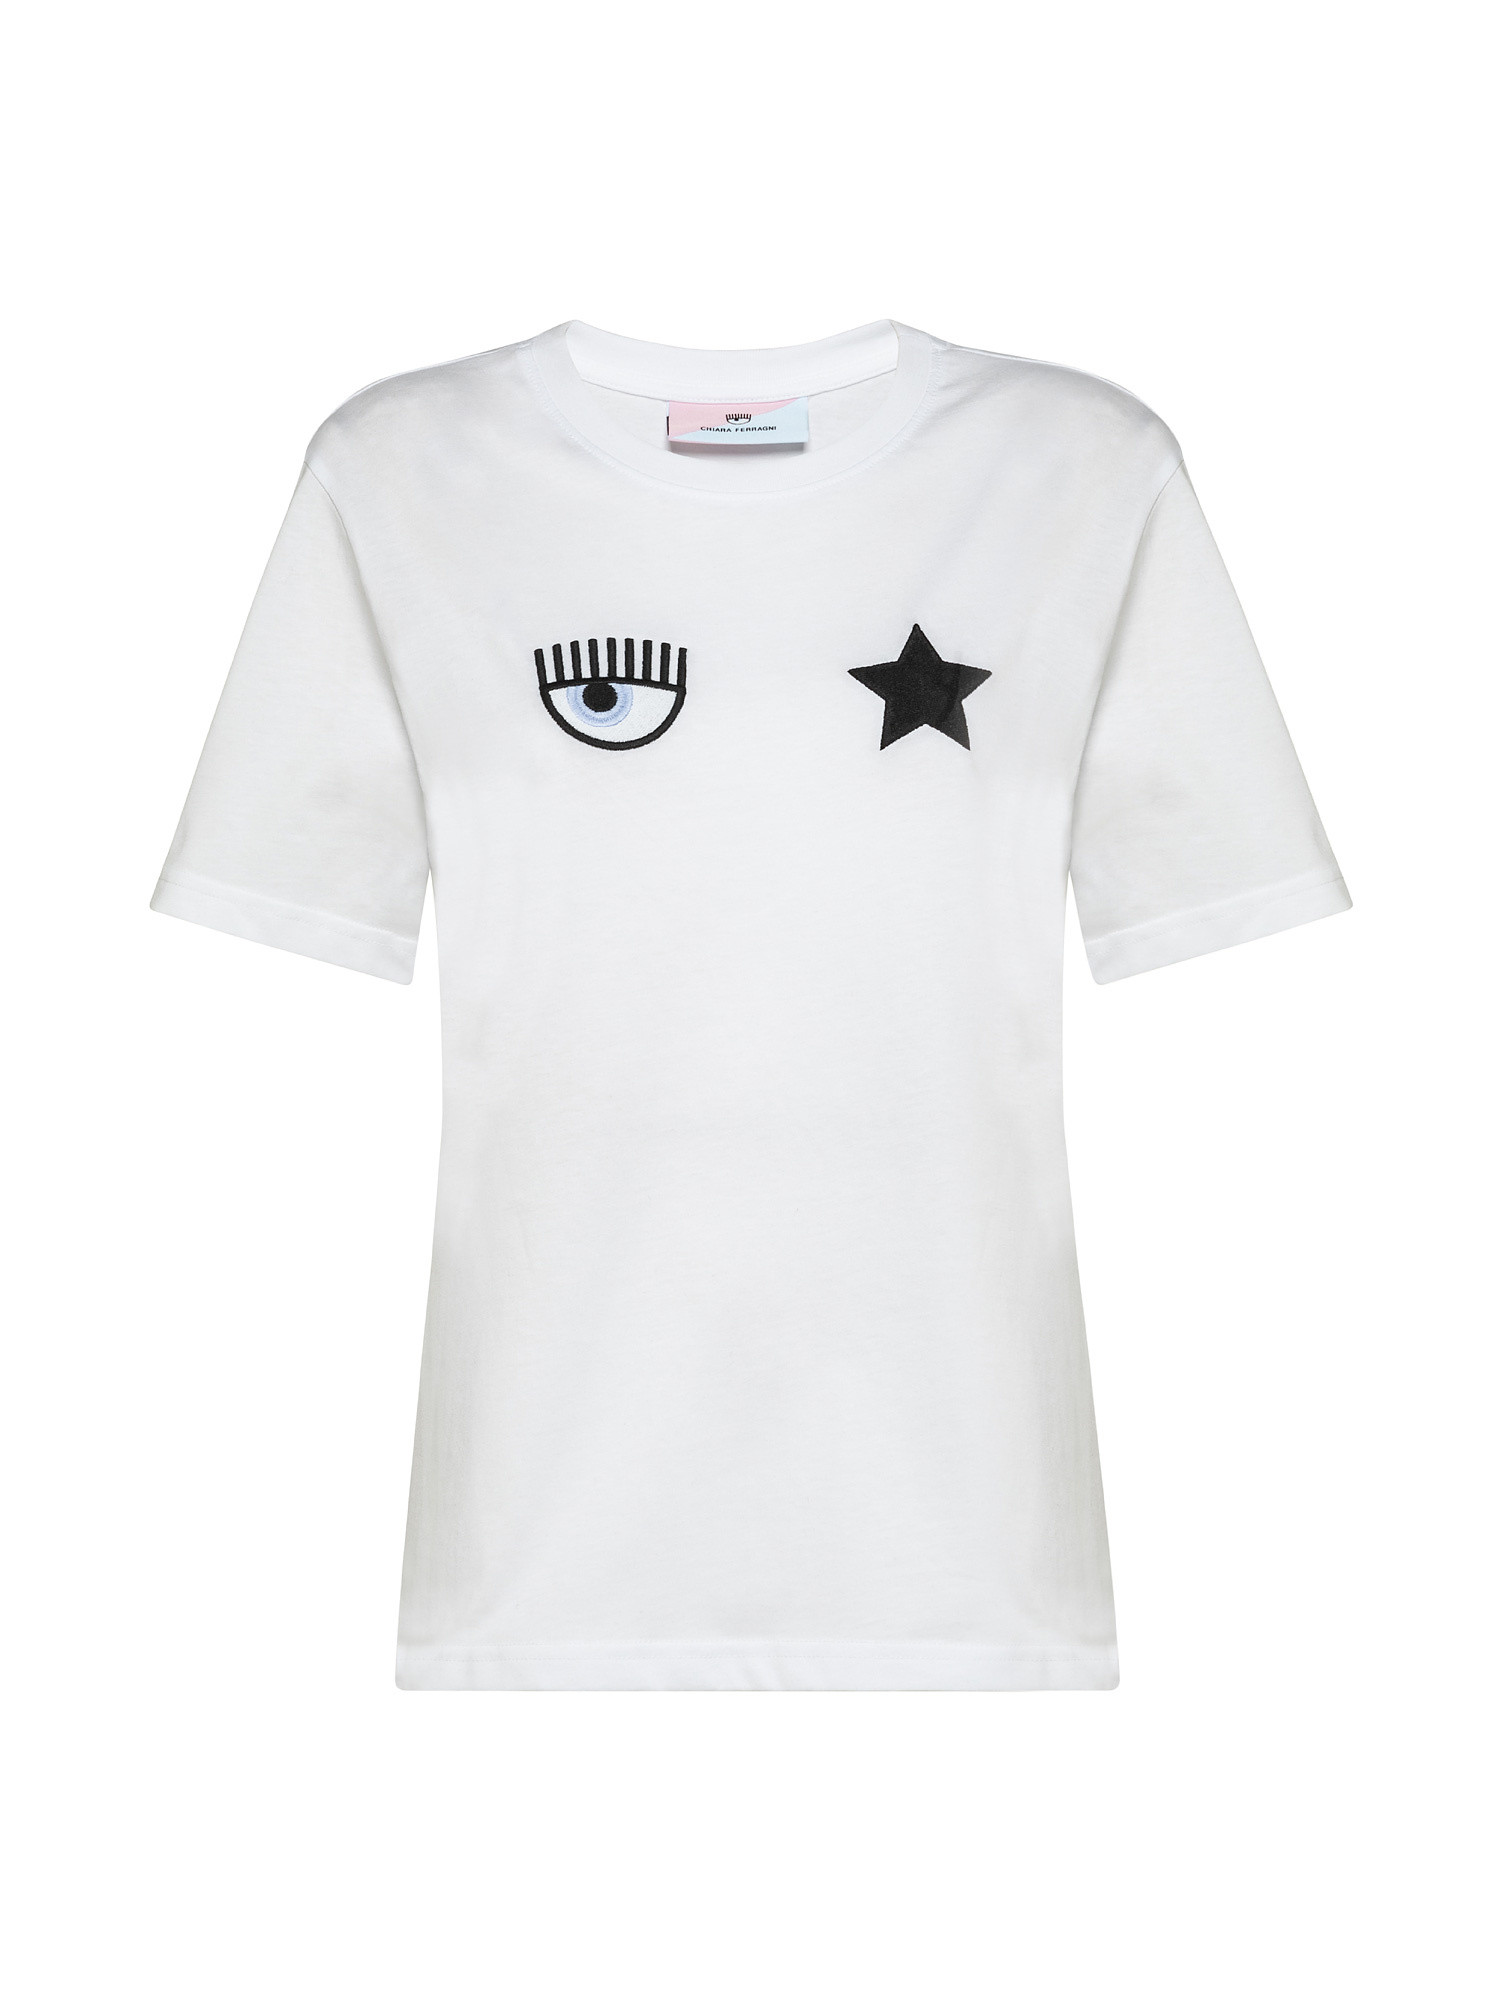 T-shirt Eye Star, Bianco, large image number 0